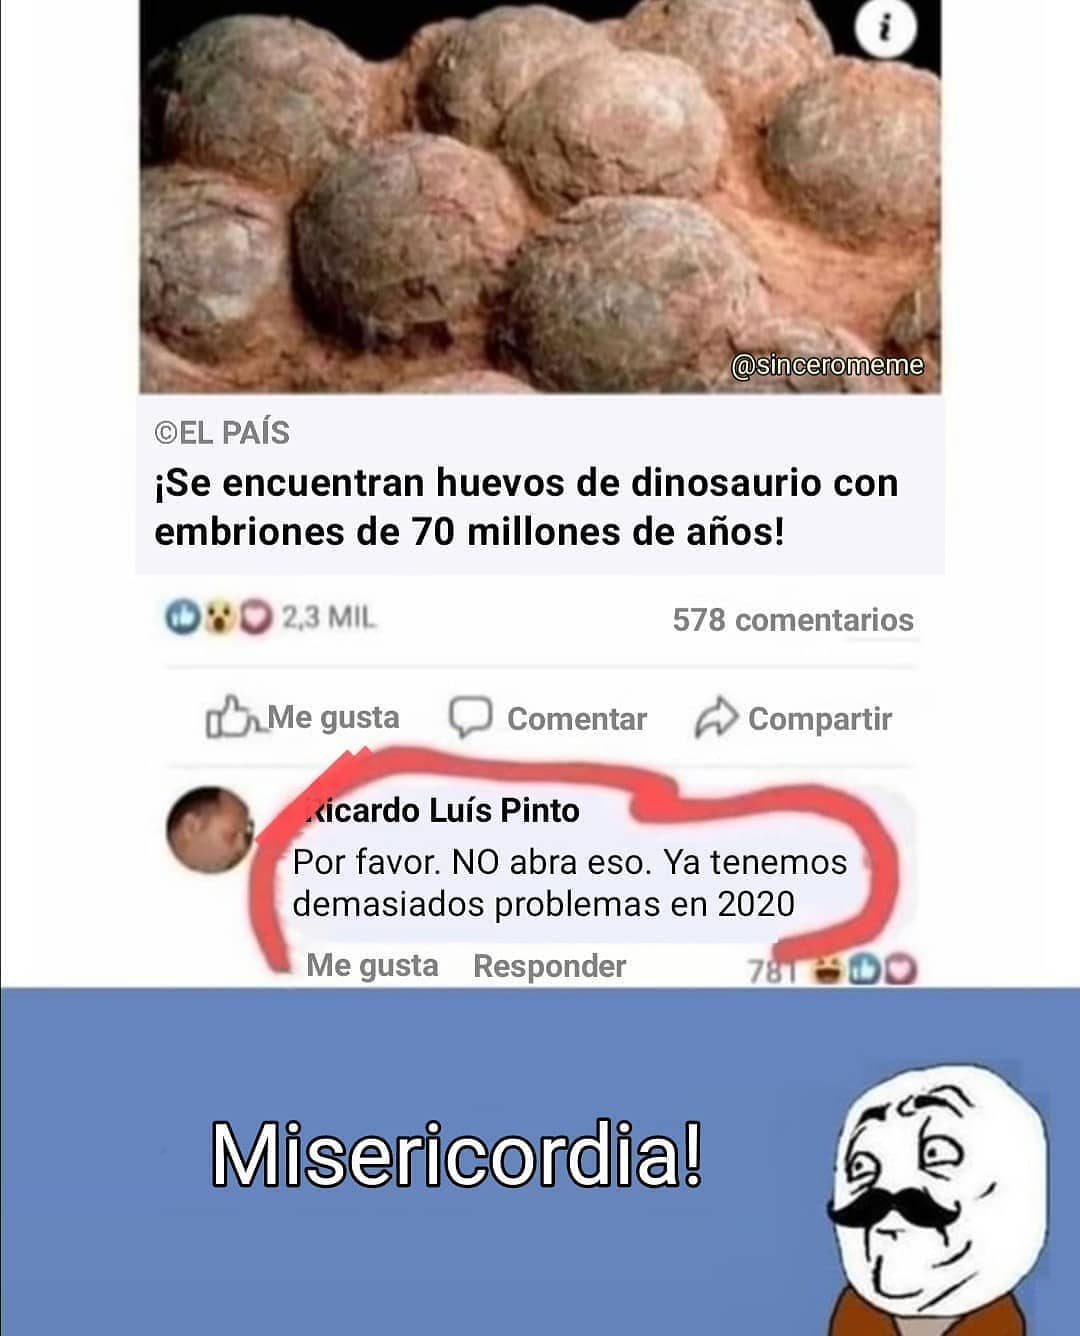 ¡Se encuentran huevos de dinosaurio con embriones de 70 millones de años! Luís Pinto Por favor. No abra eso. Ya tenemos demasiados problemas en 2020. Misericordia!